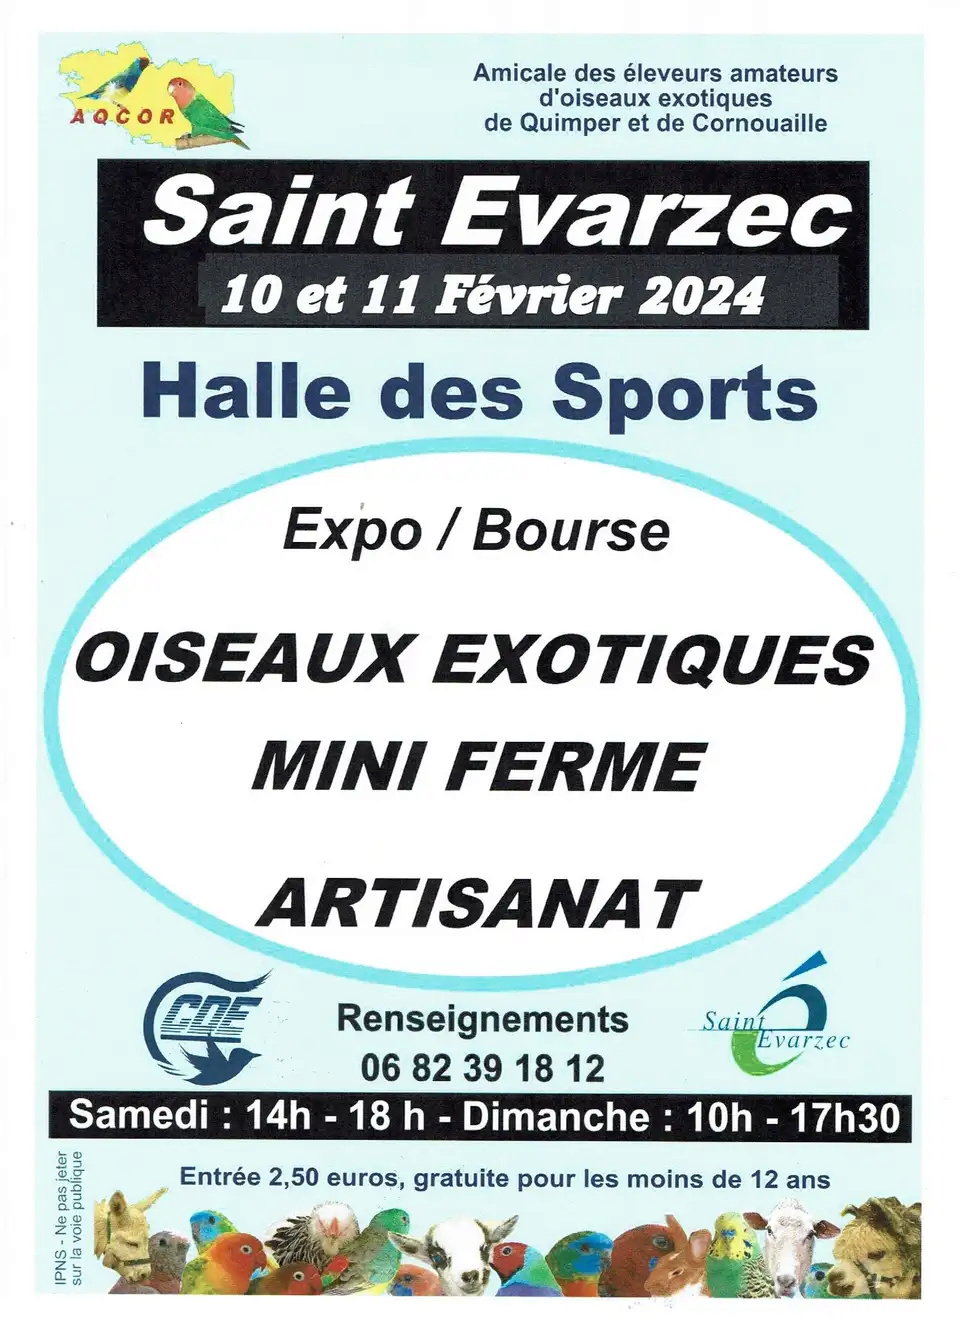 Saint-Évarzec (29) - (Exposition et bourse d'oiseaux, mini ferme) Img_1206